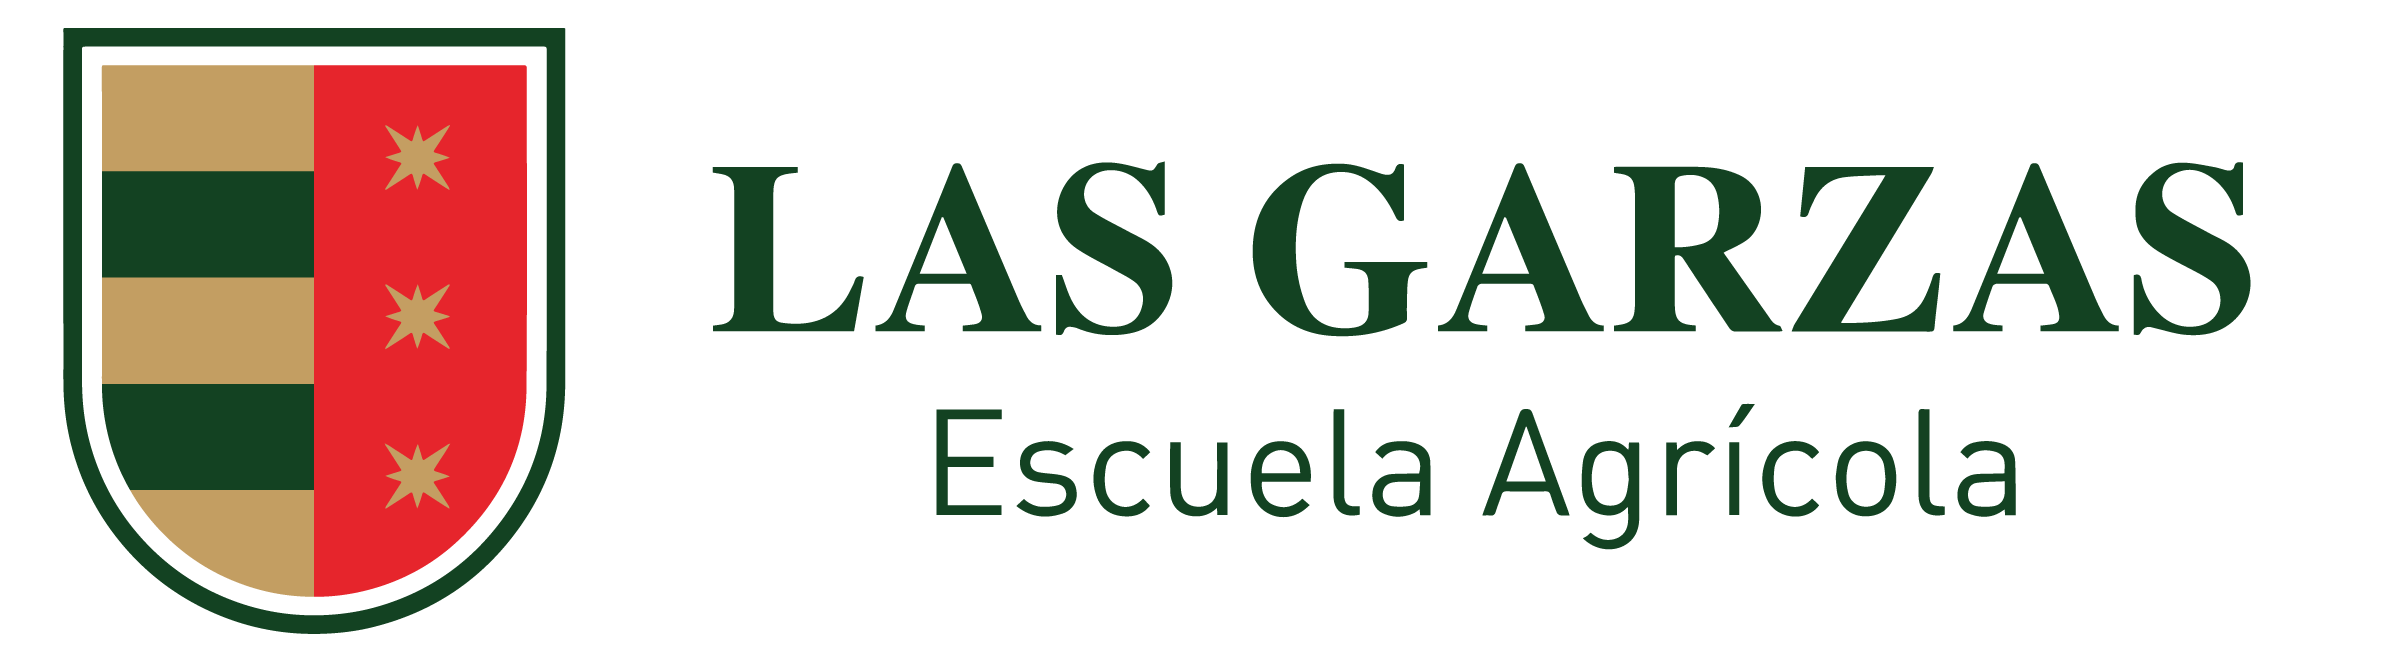 Escuela Agrícola Las Garzas - 